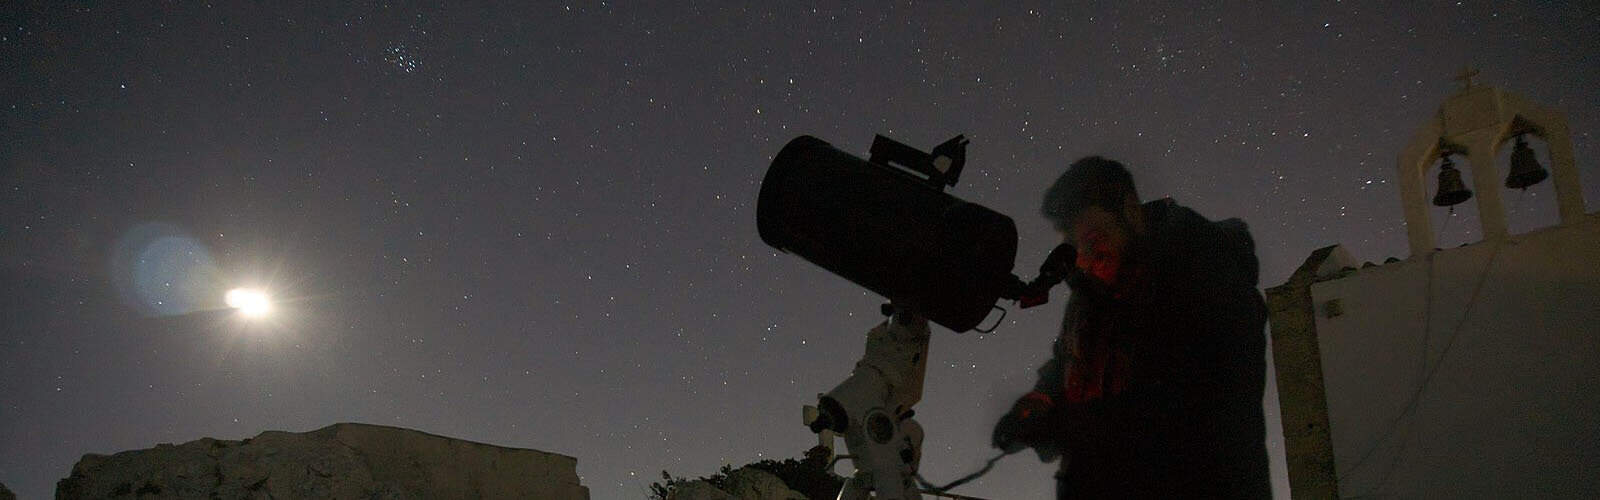 best celestial telescope